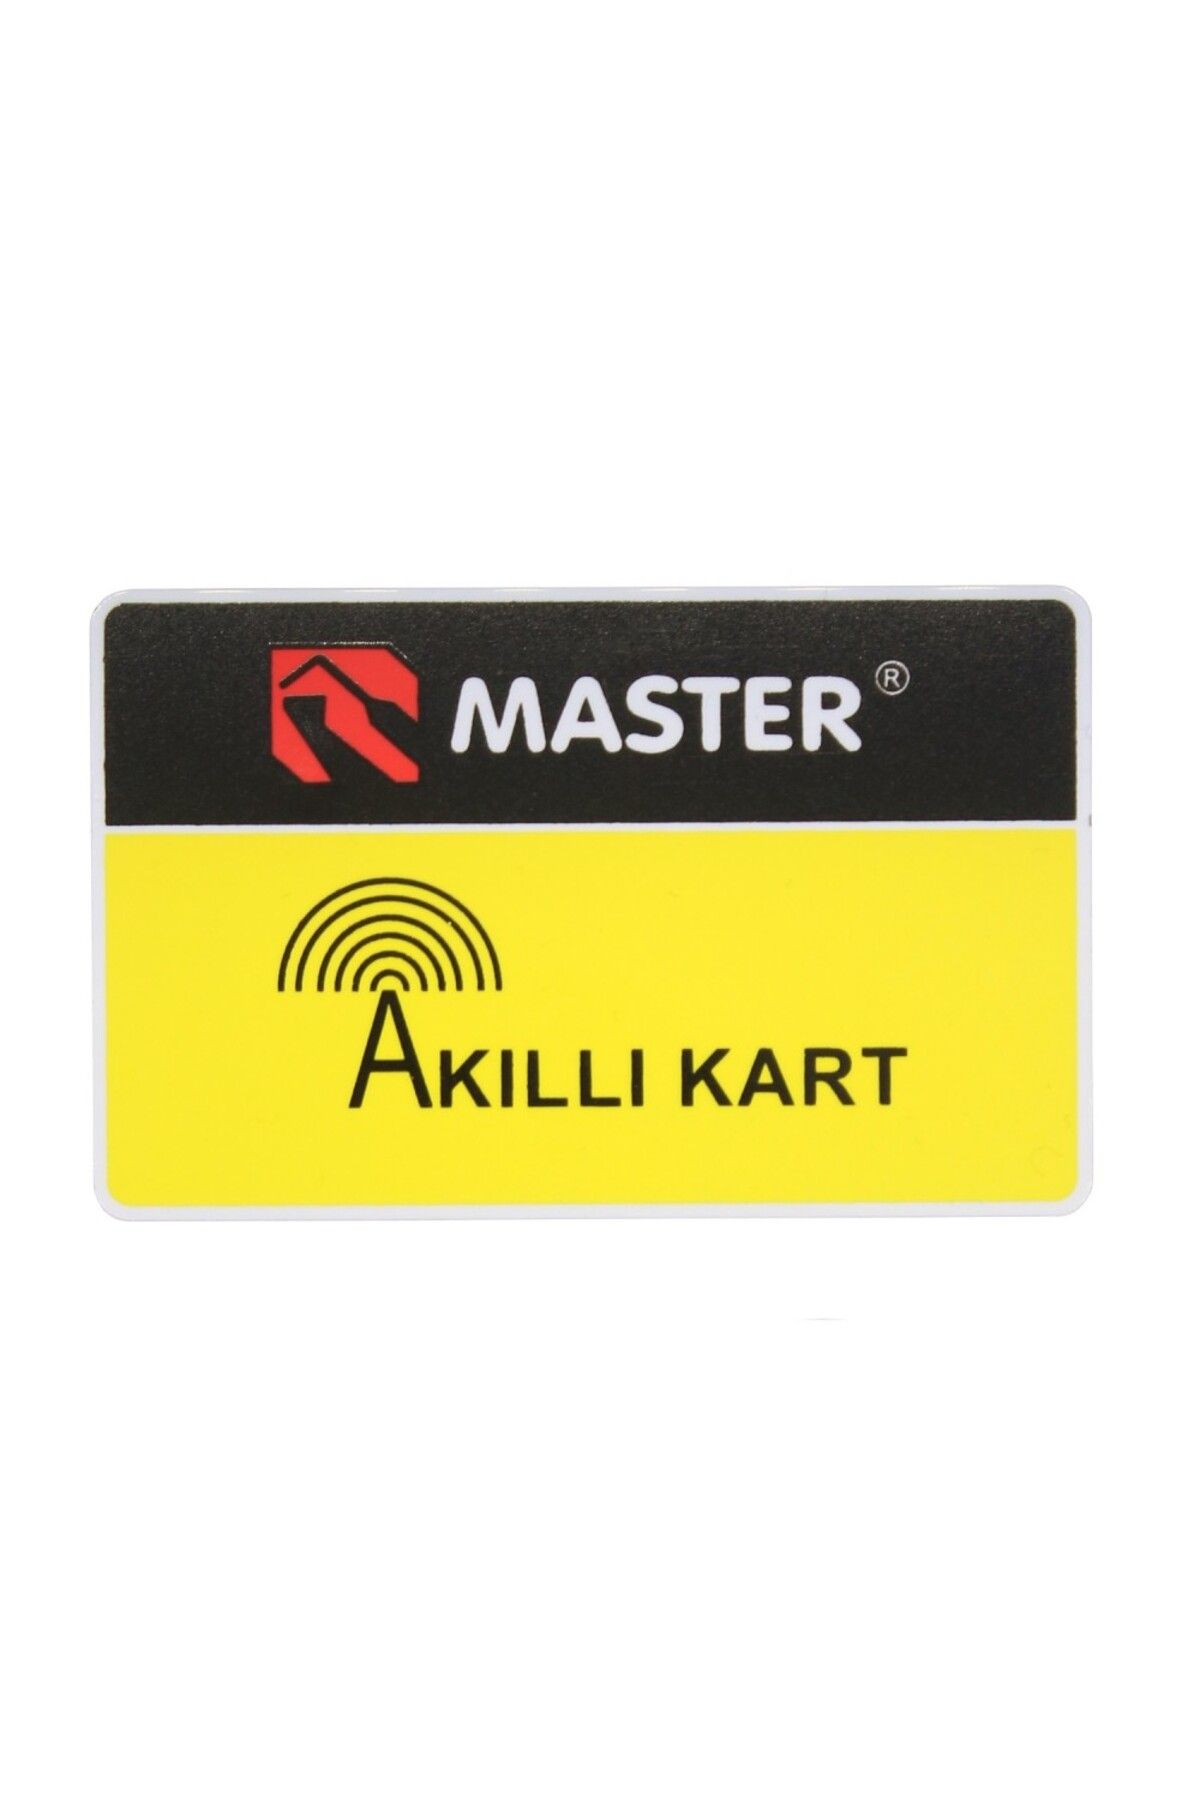 Master AKILLI KART